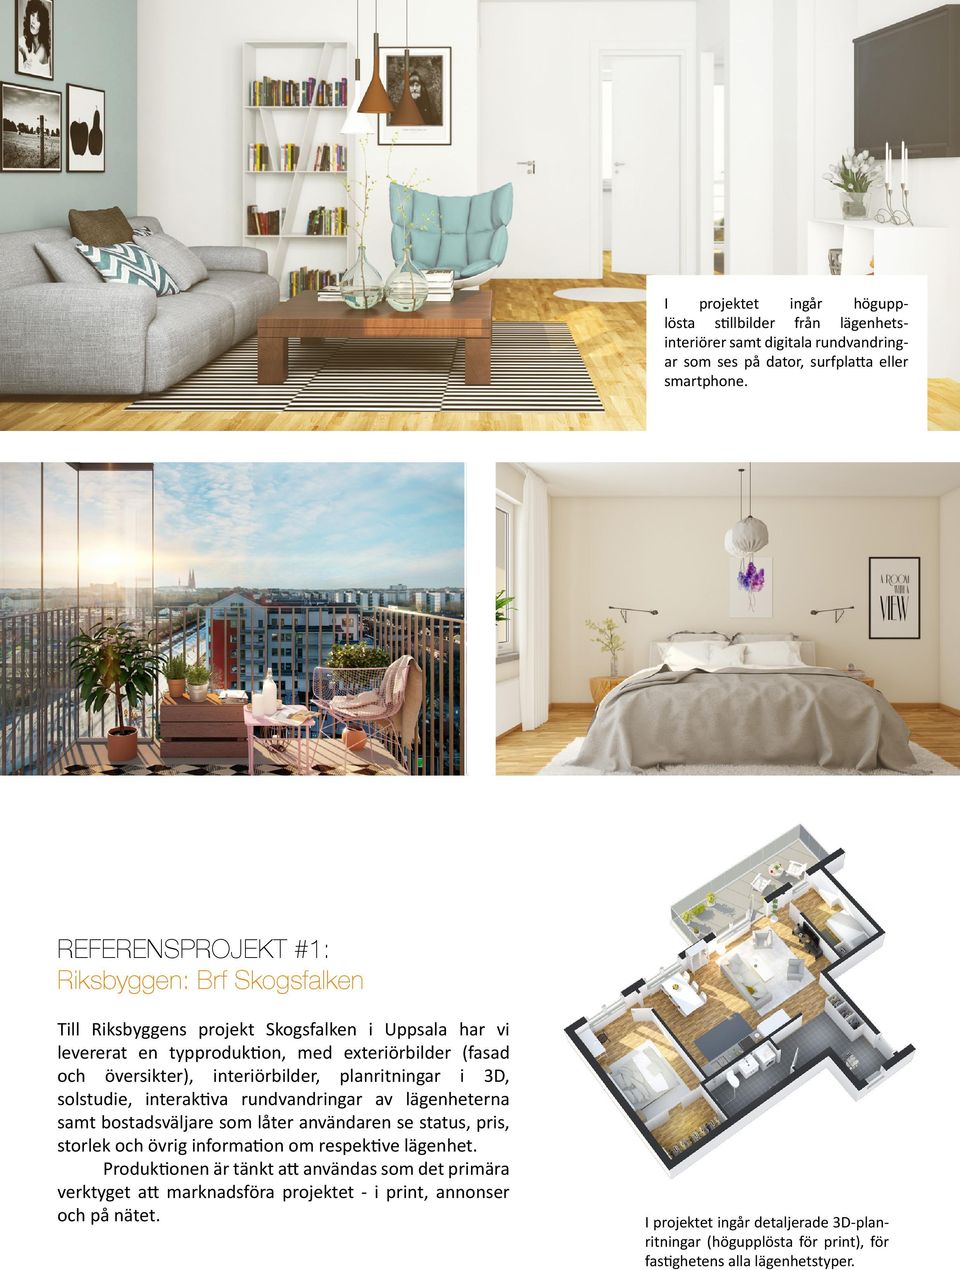 interiörbilder, planritningar i 3D, solstudie, interaktiva rundvandringar av lägenheterna samt bostadsväljare som låter användaren se status, pris, storlek och övrig information om